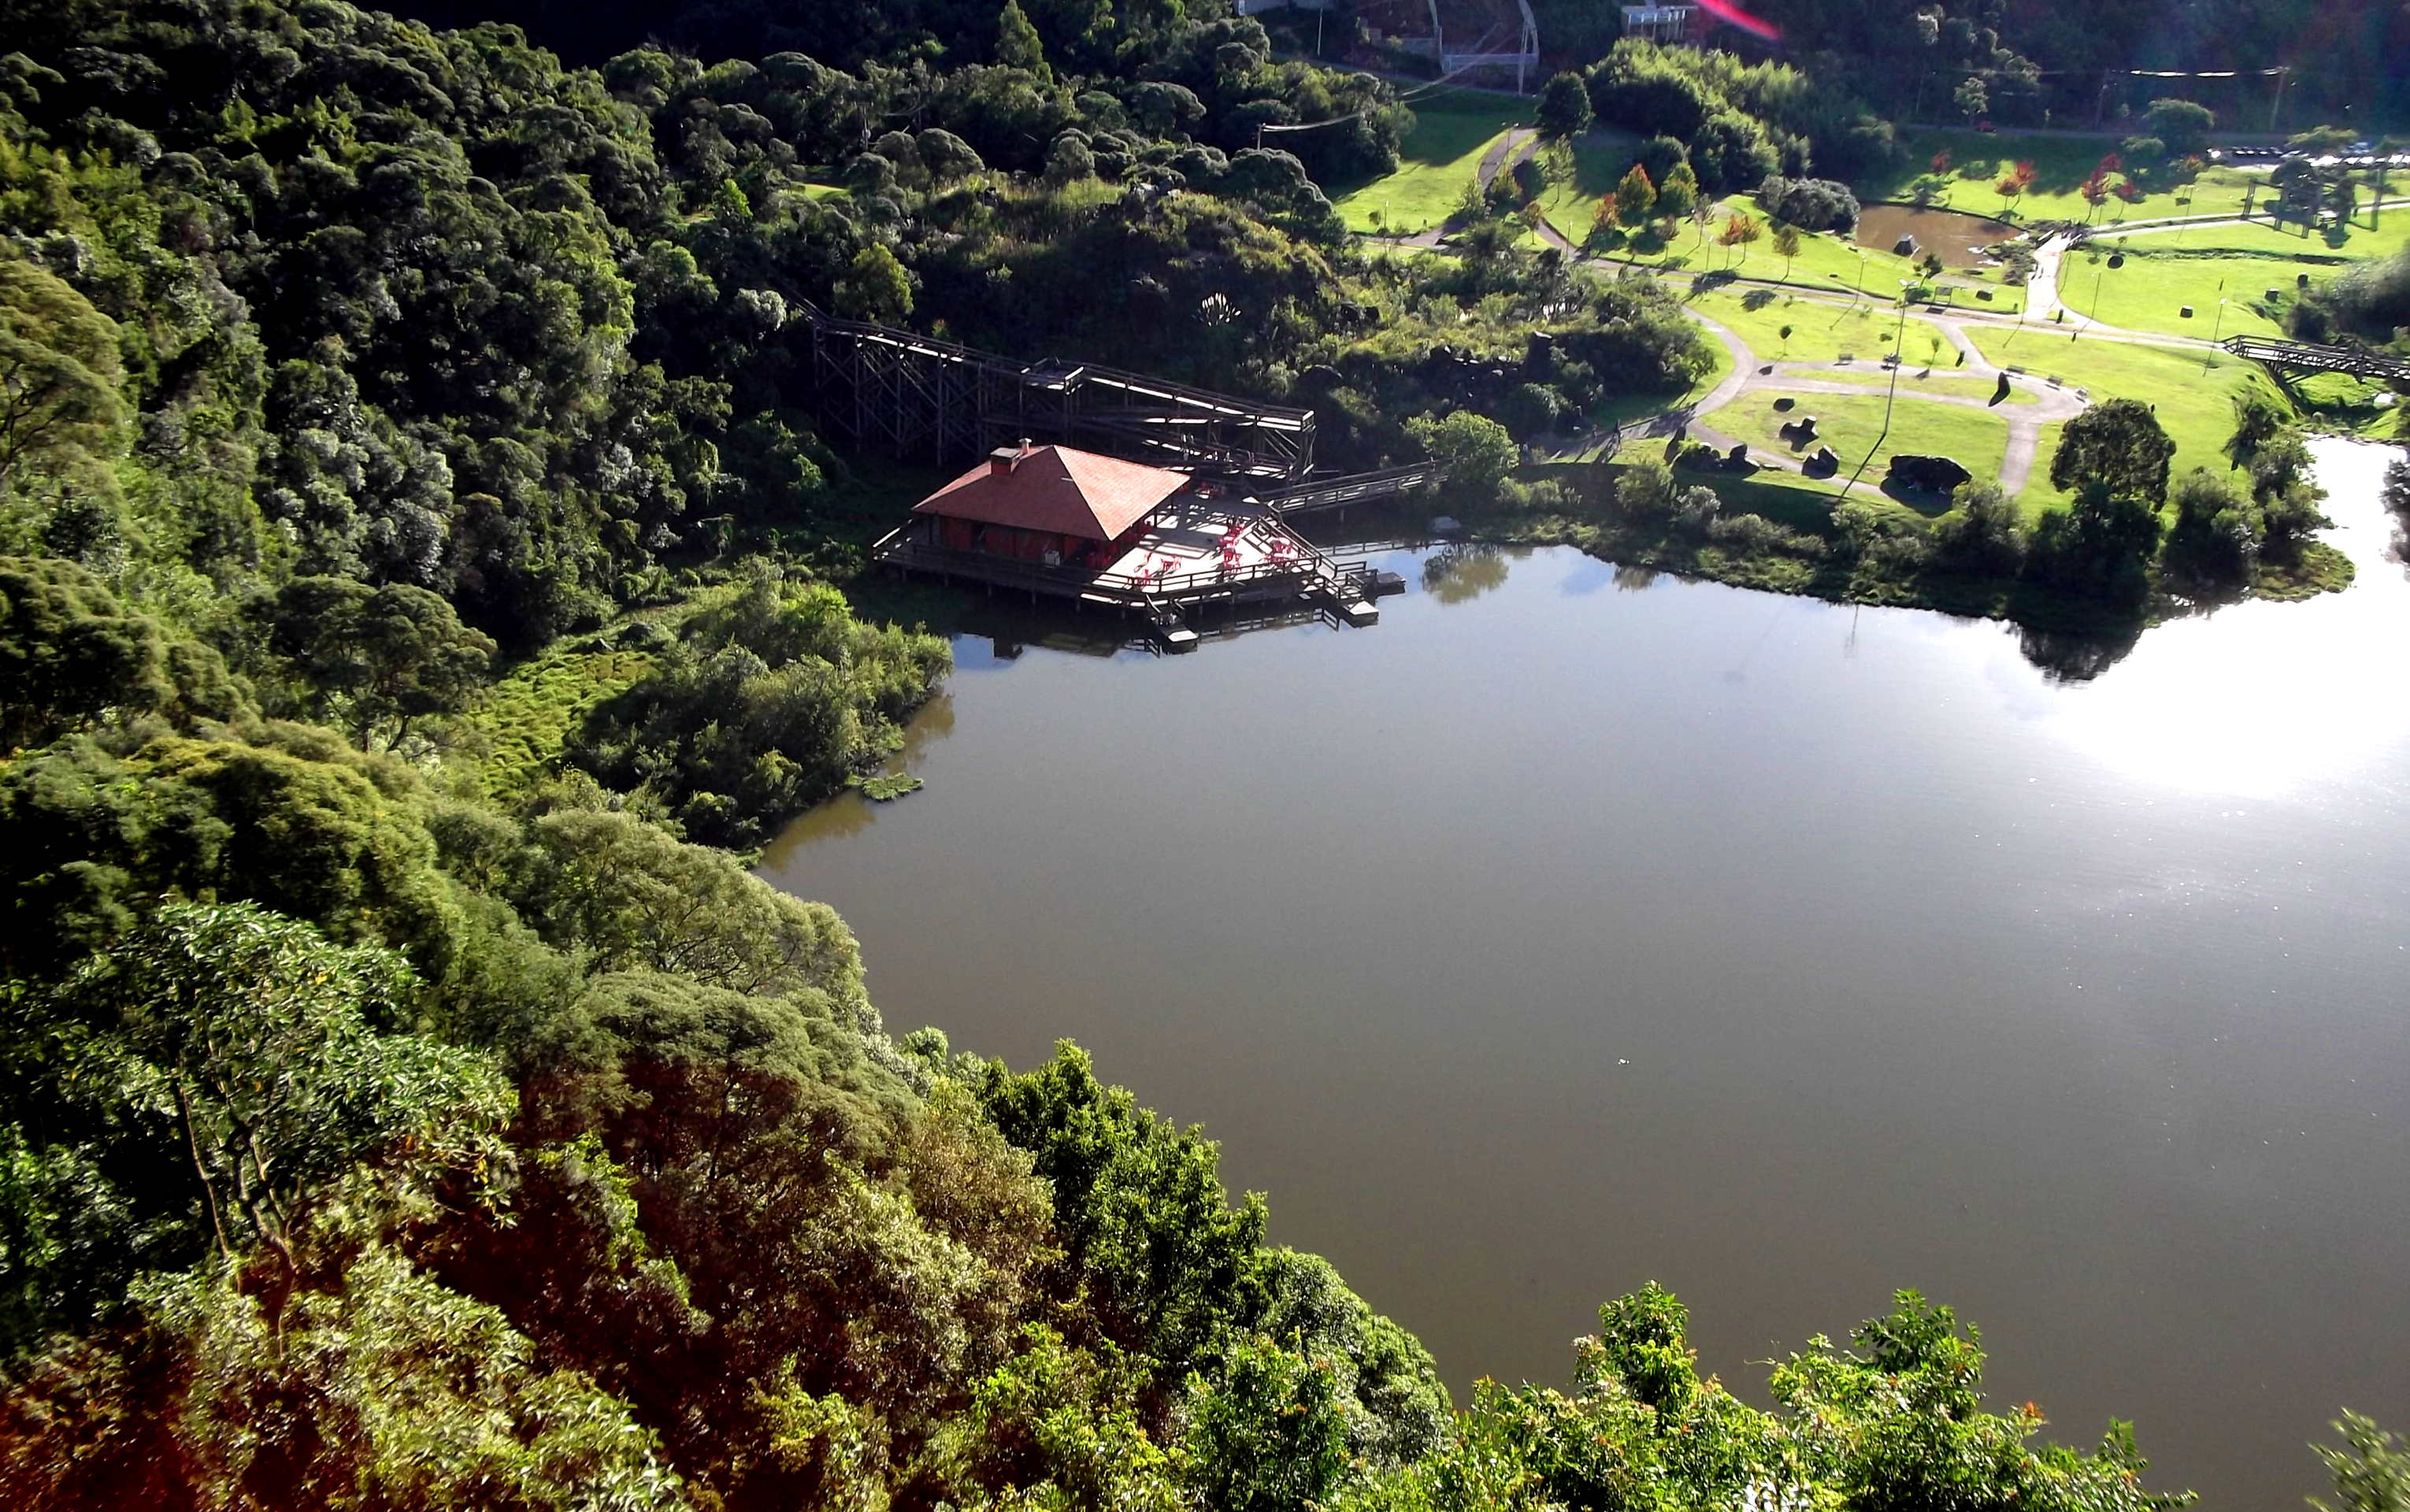 Uma das vistas maravilhosas do mirante do parque tanguá